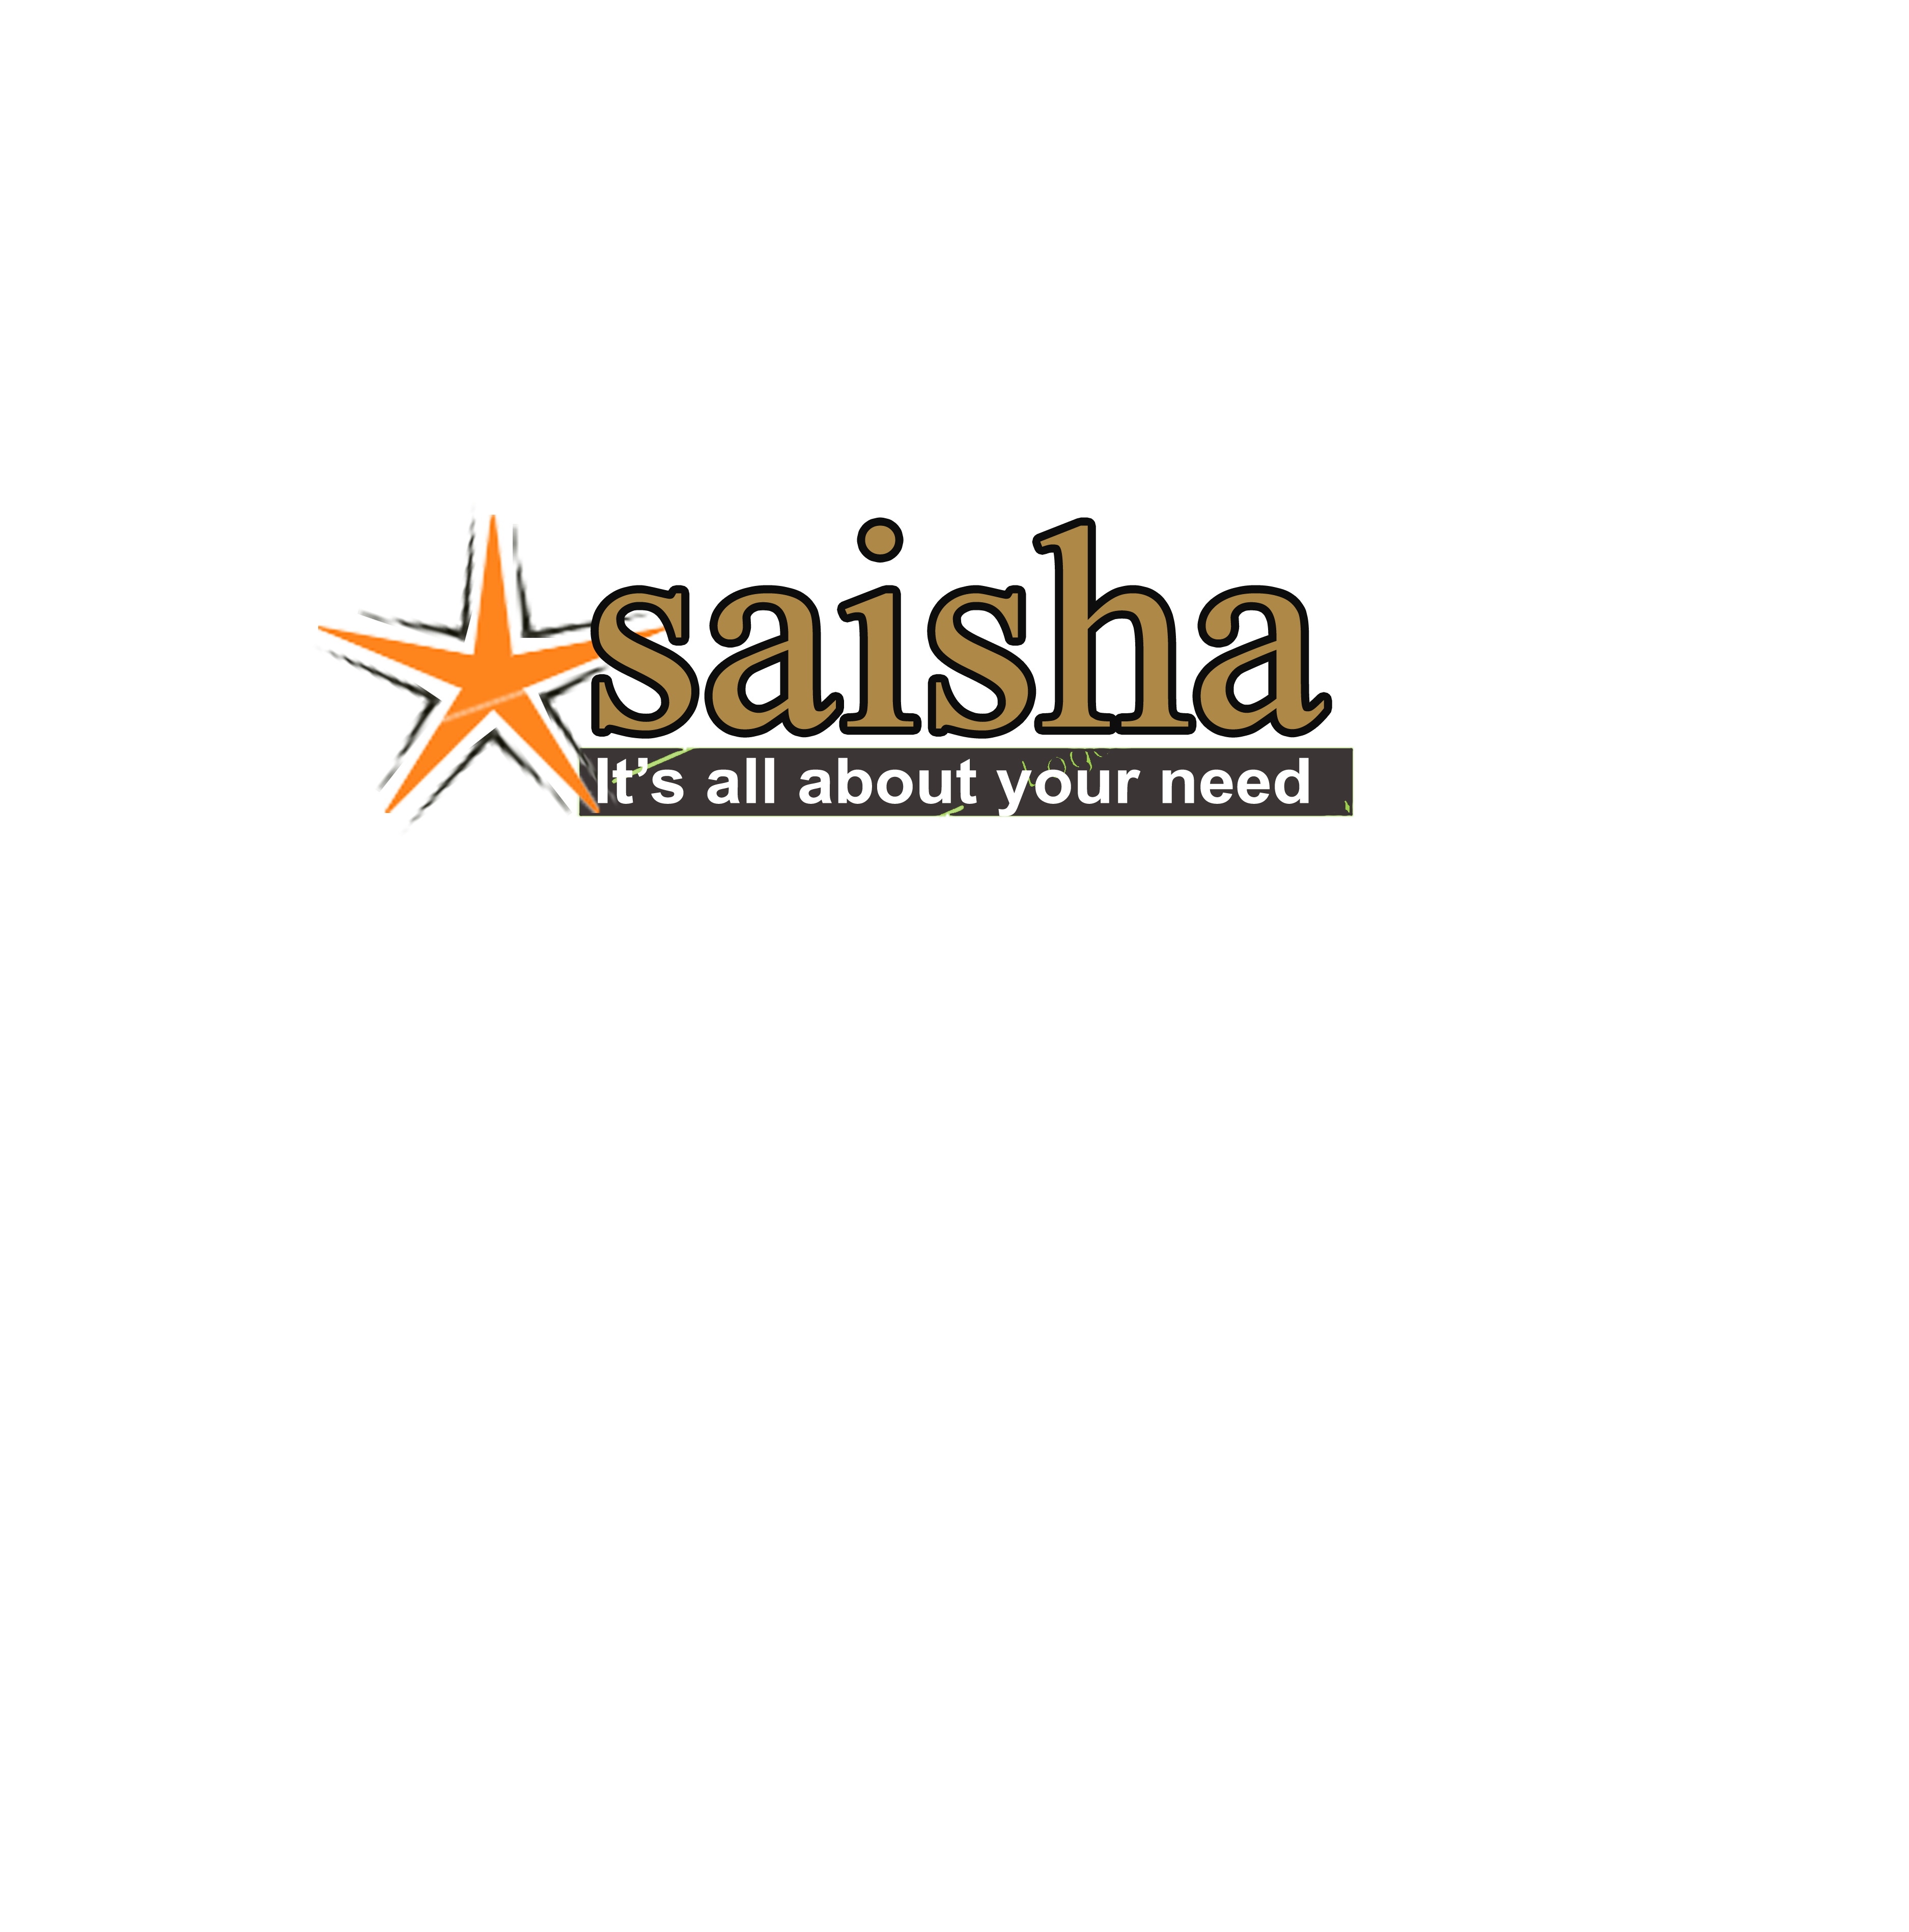 Saisha